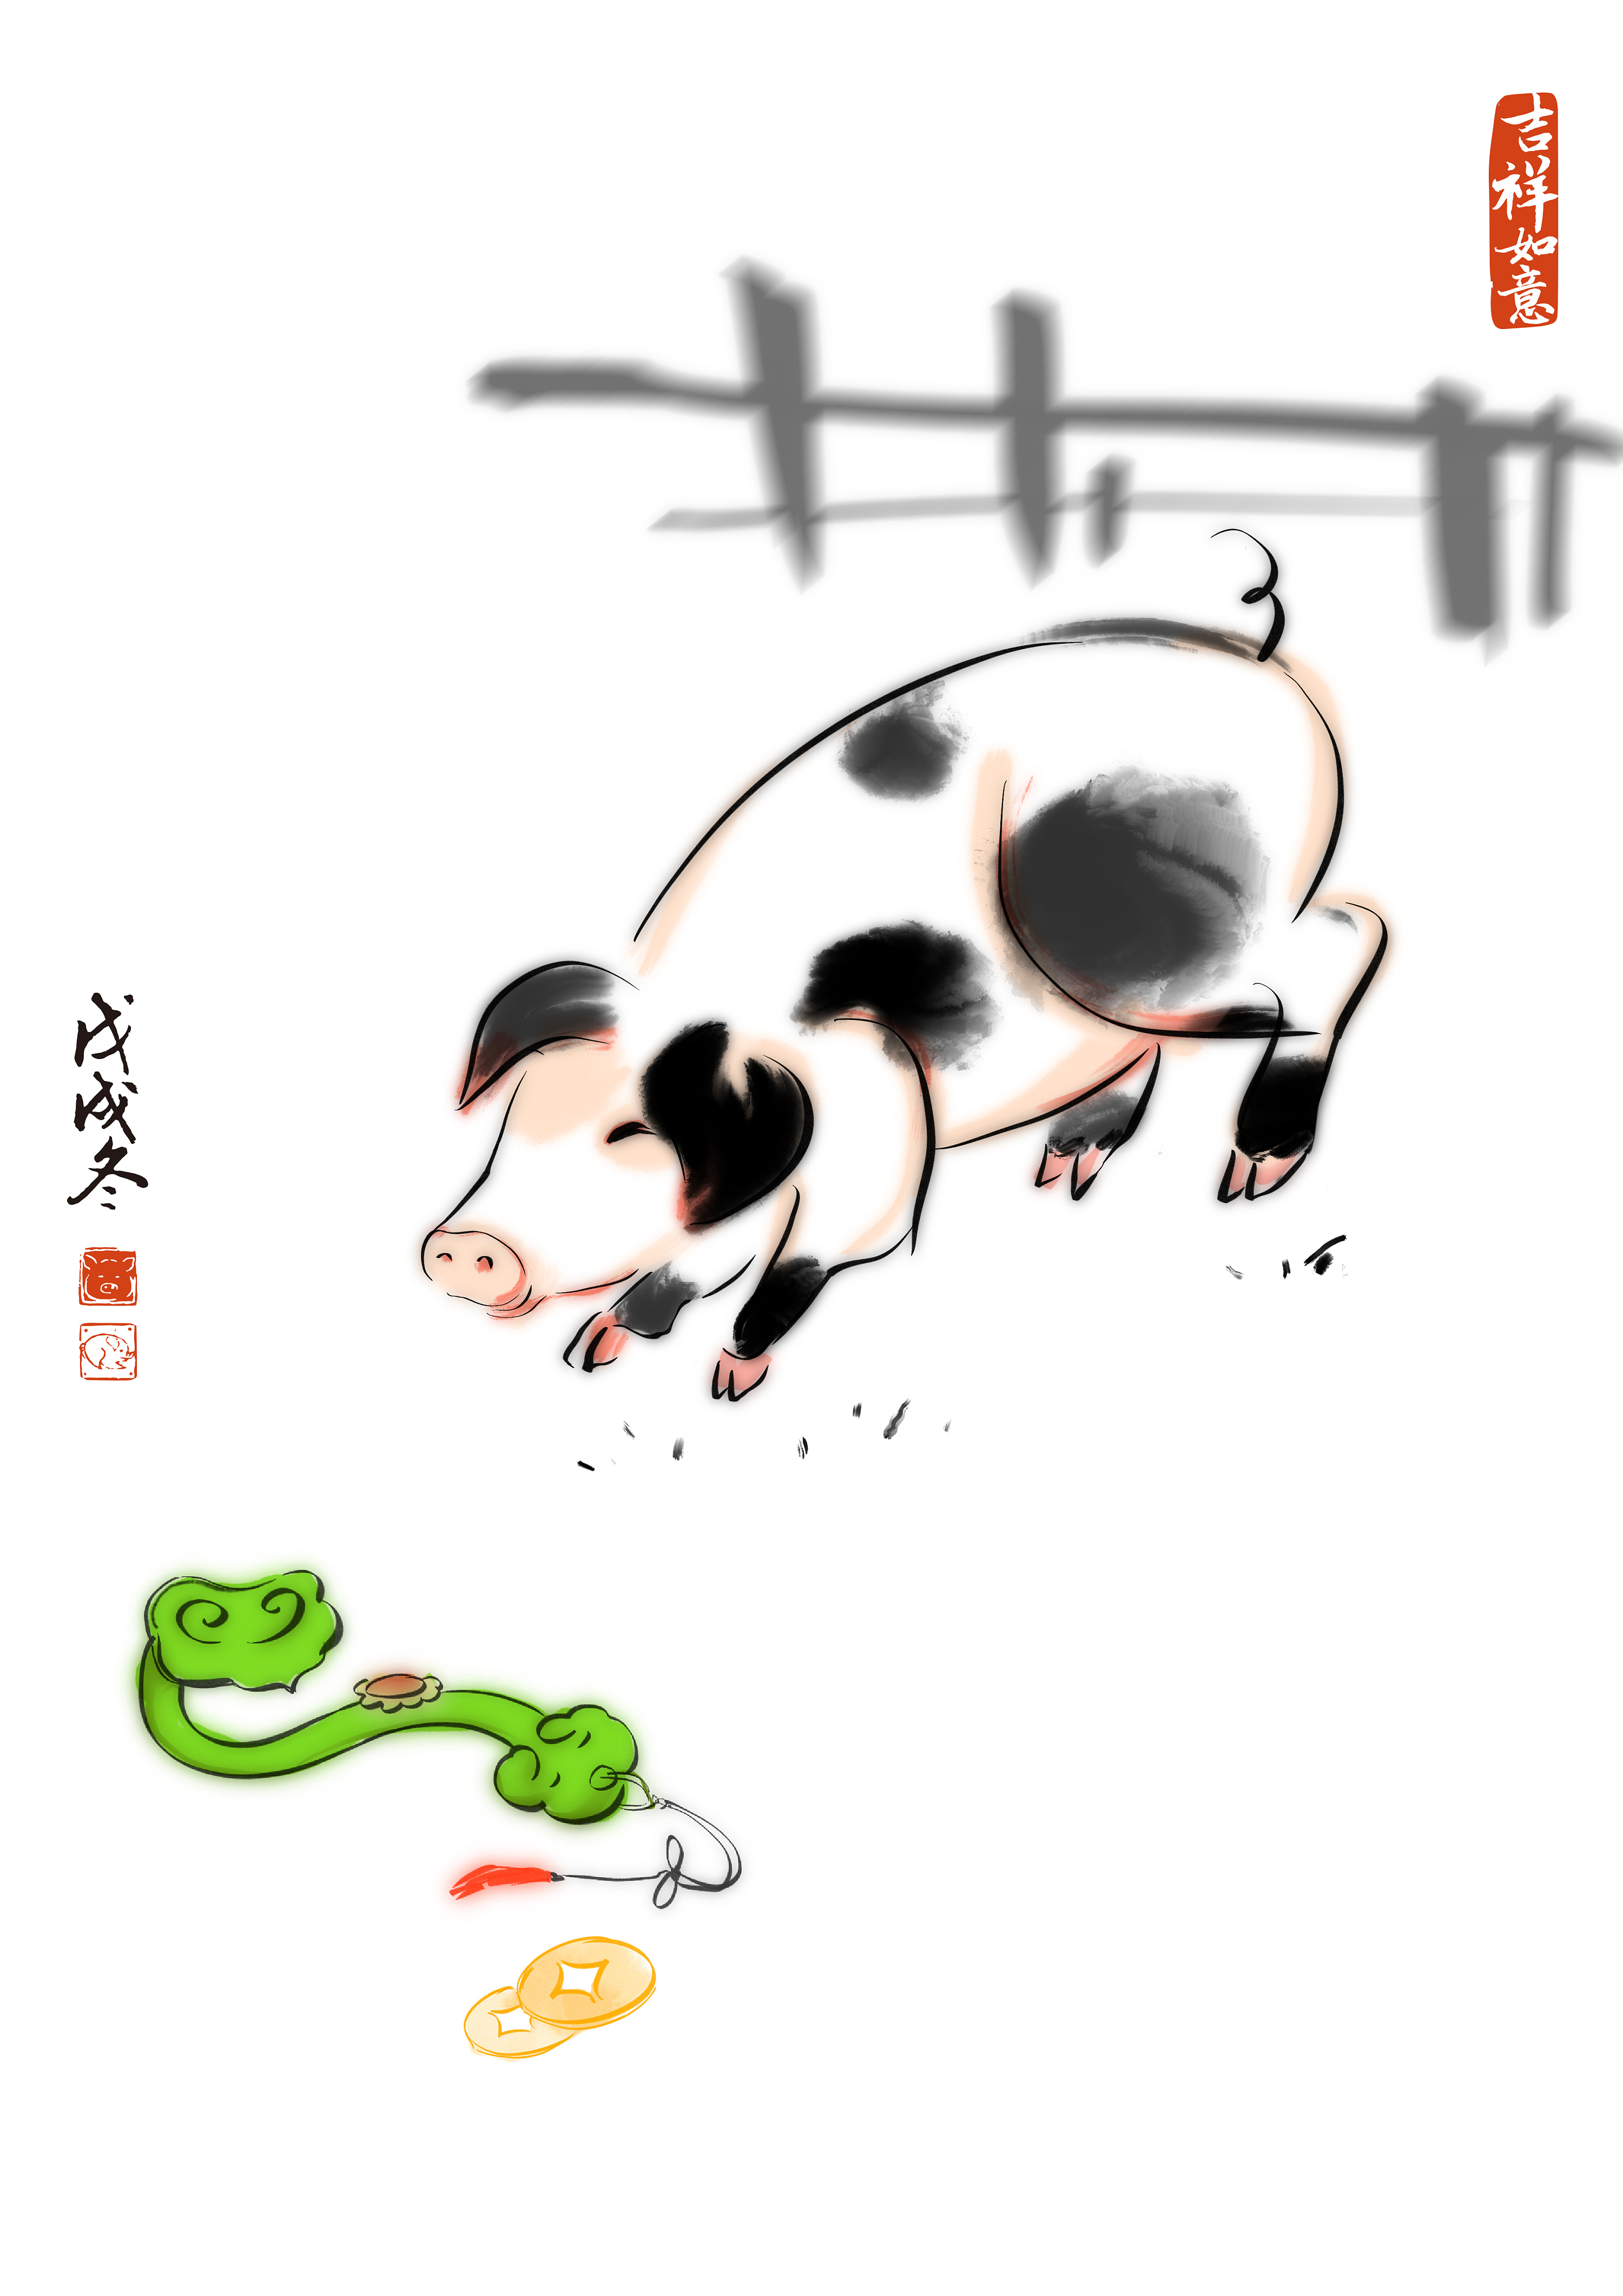 一点水彩画中的猪 向量例证. 插画 包括有 板刻, 会议室, 宠物, 题头, 食物, 肉猪, 茴香, 哺乳动物 - 216599913